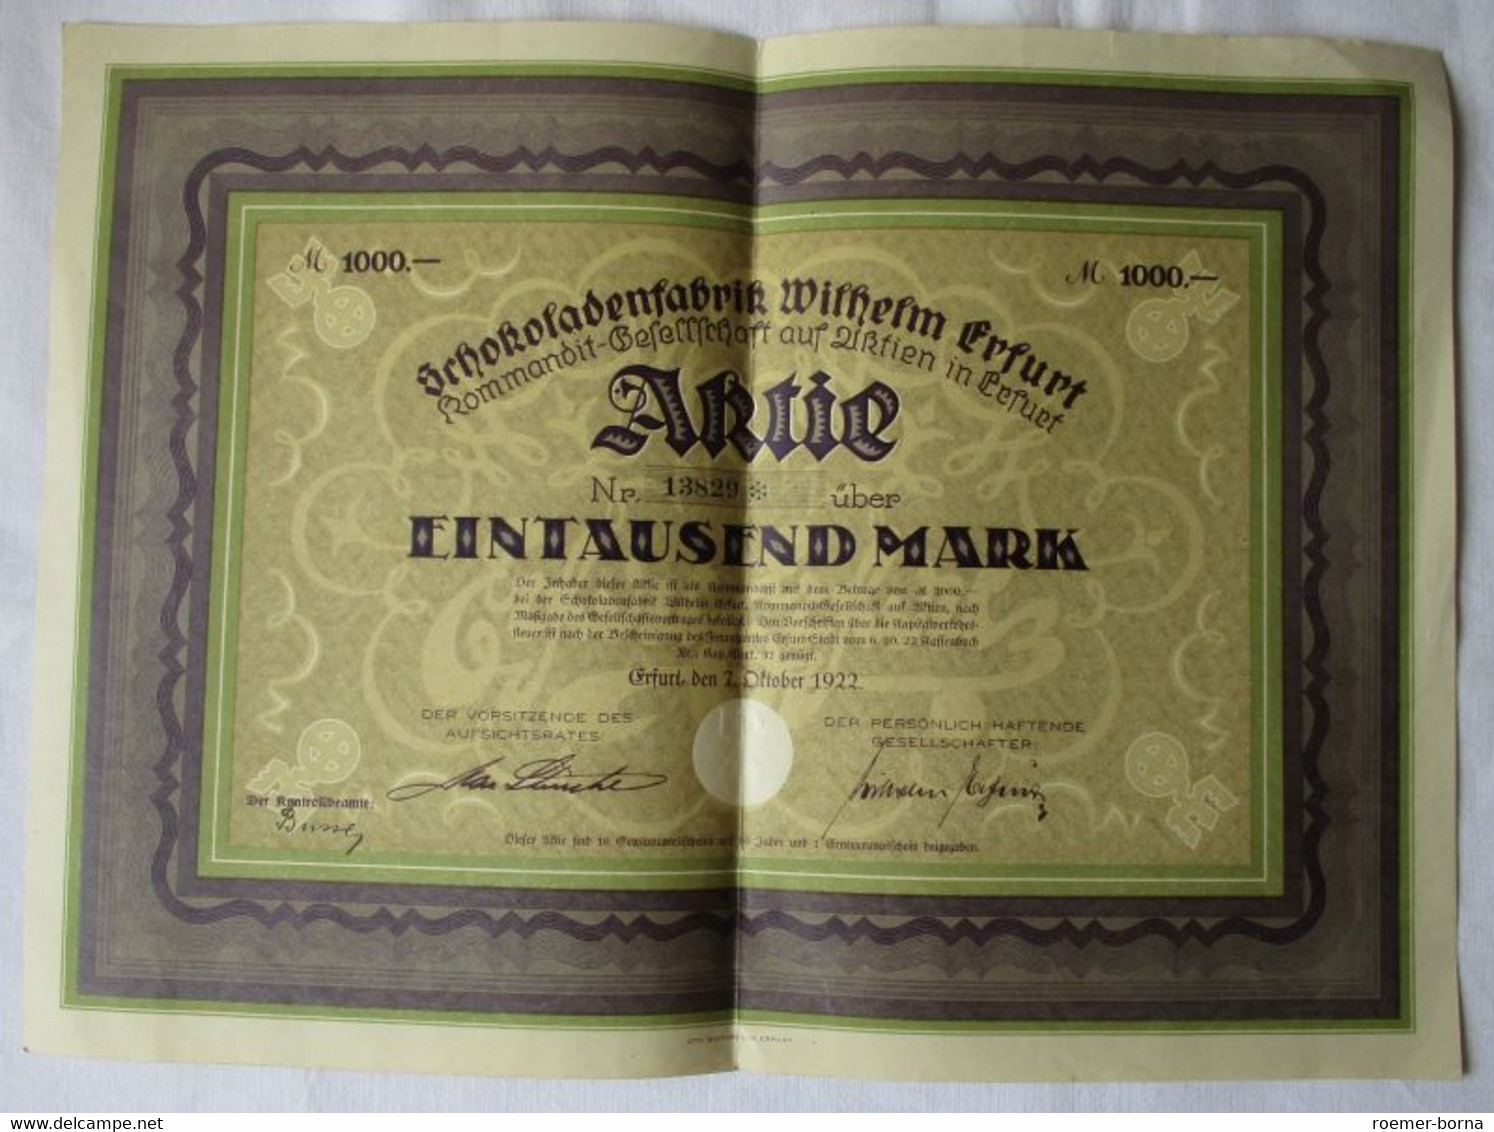 Seltene 1000 Mark Aktie Schokoladenfabrik Wilhelm Erfurt 7.10.1922 (110204) - Agriculture